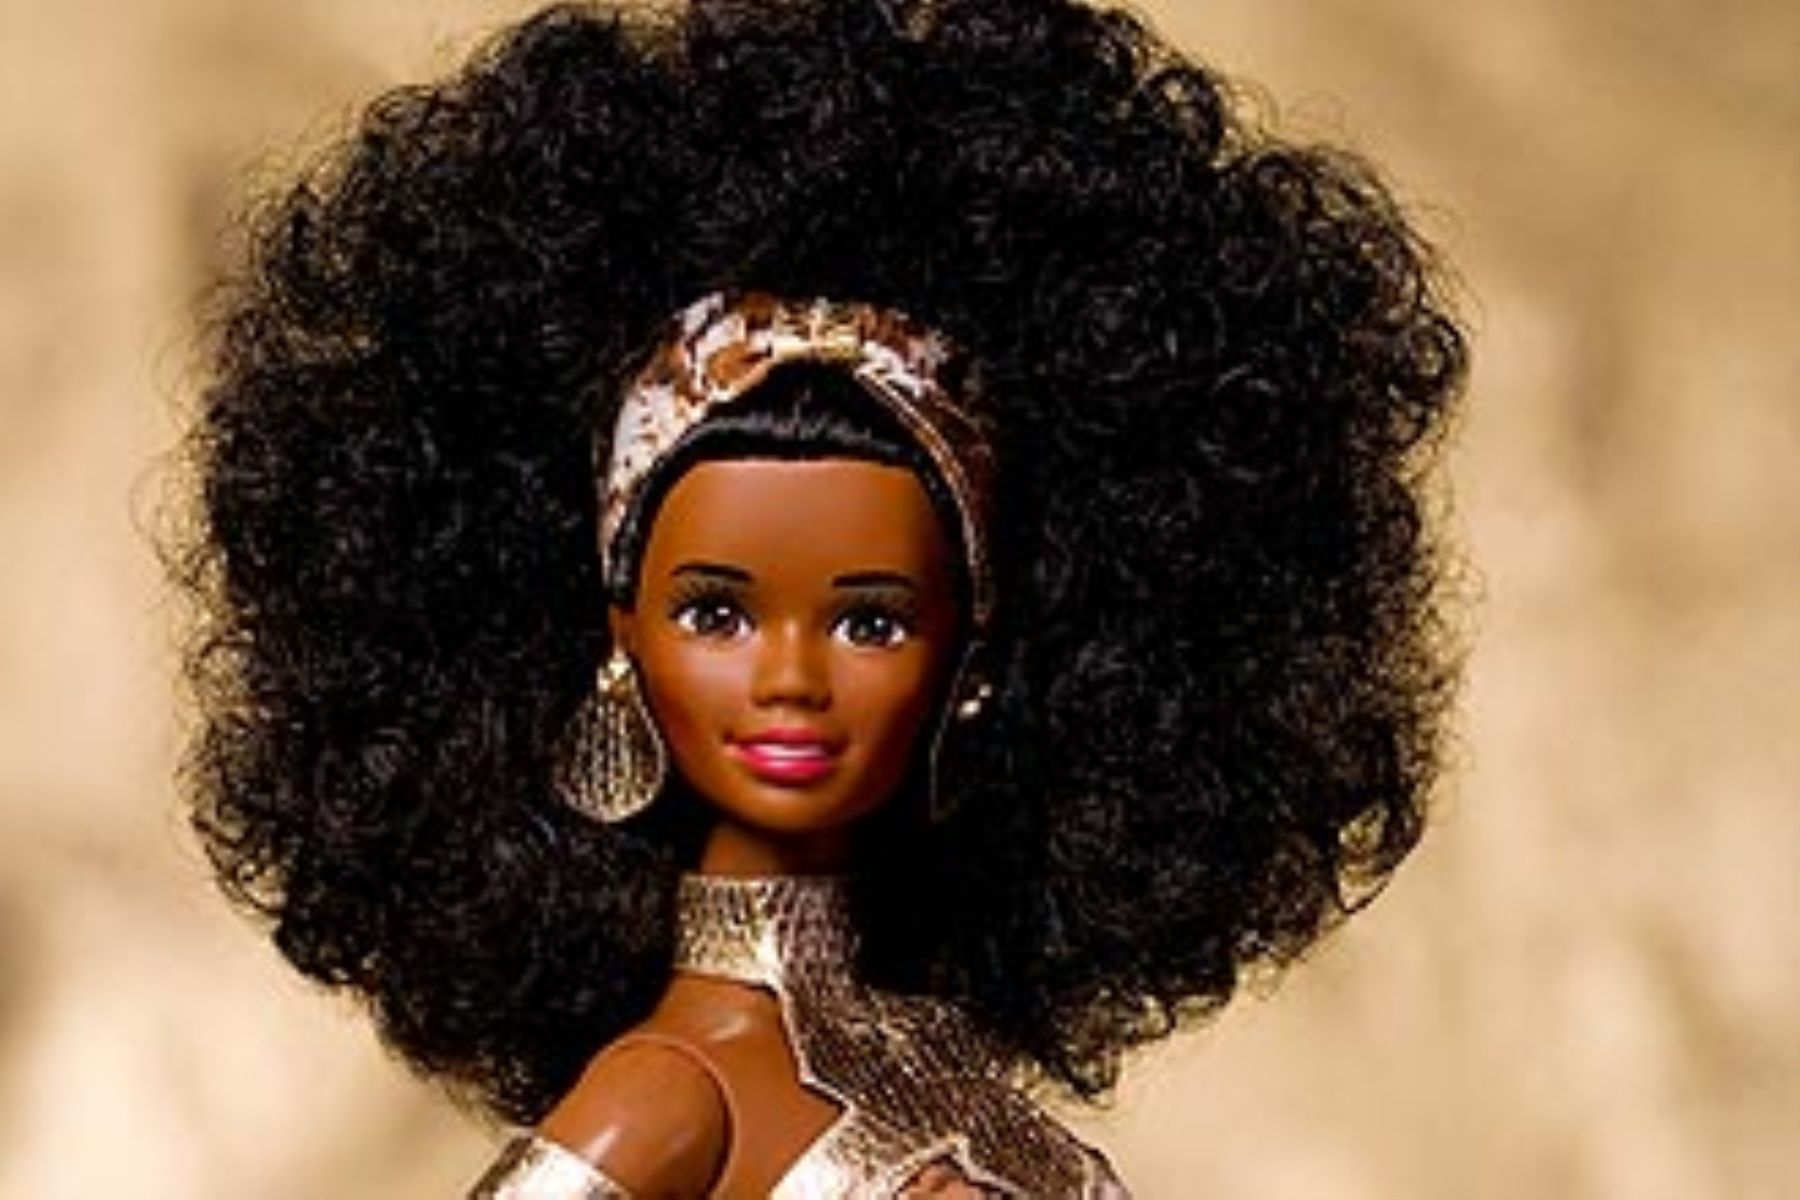 Barbie negra inspirada en la chica Bond Halle Berry forma parte de exhibición de barbies negras en Brasil.